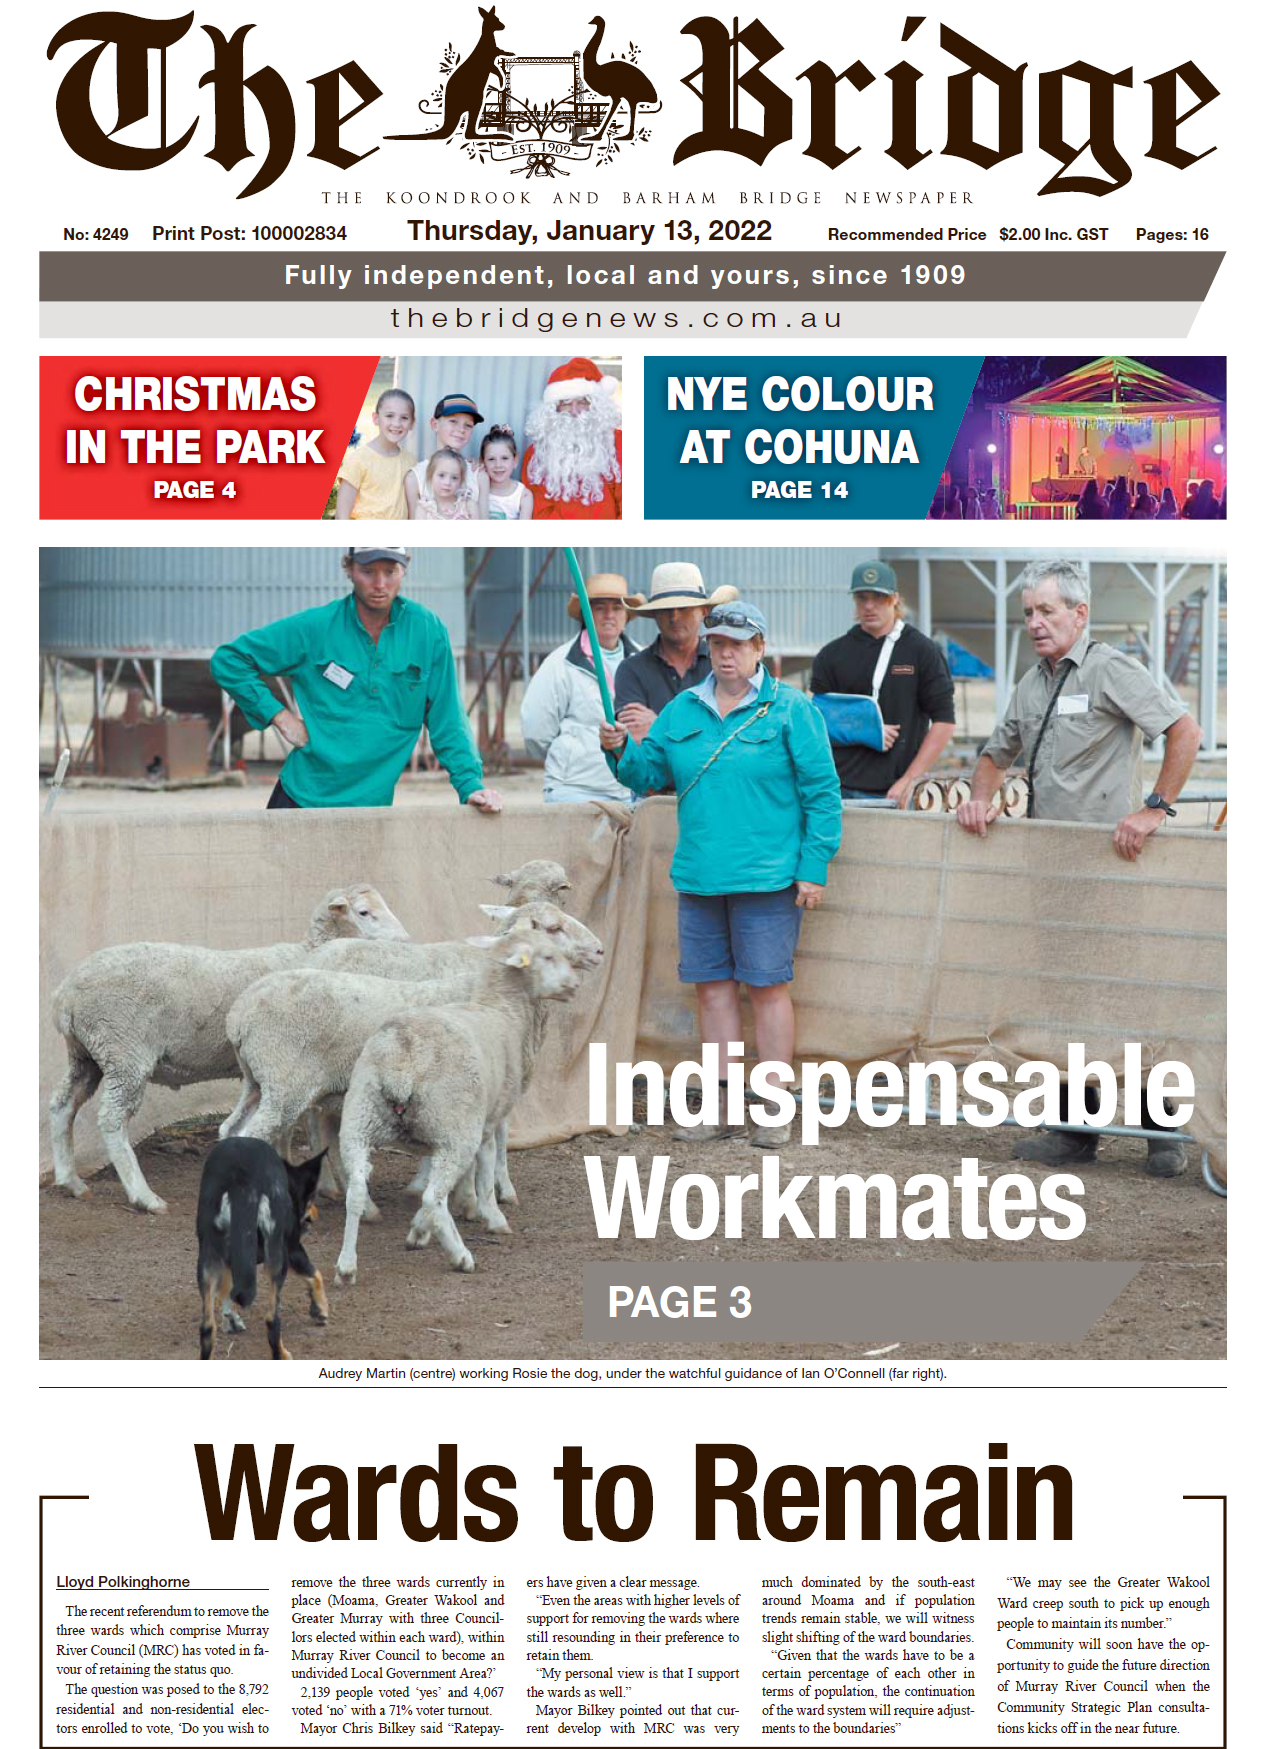 The Koondrook and Barham Bridge Newspaper 13 January 2022